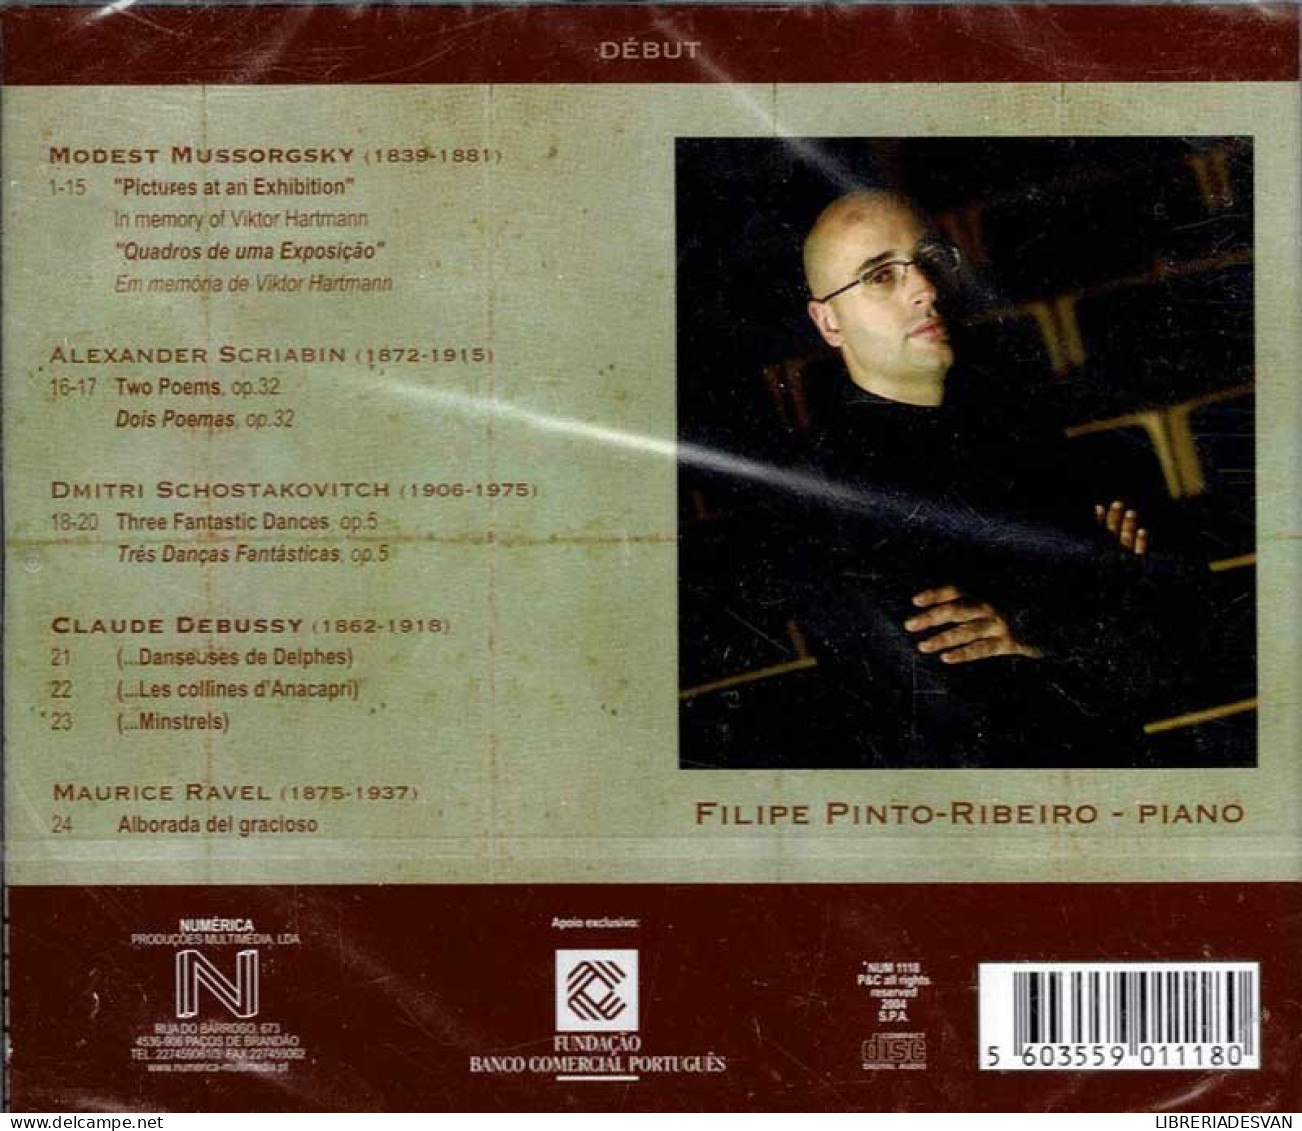 Filipe Pinto-Ribeiro - Début. CD - Classica